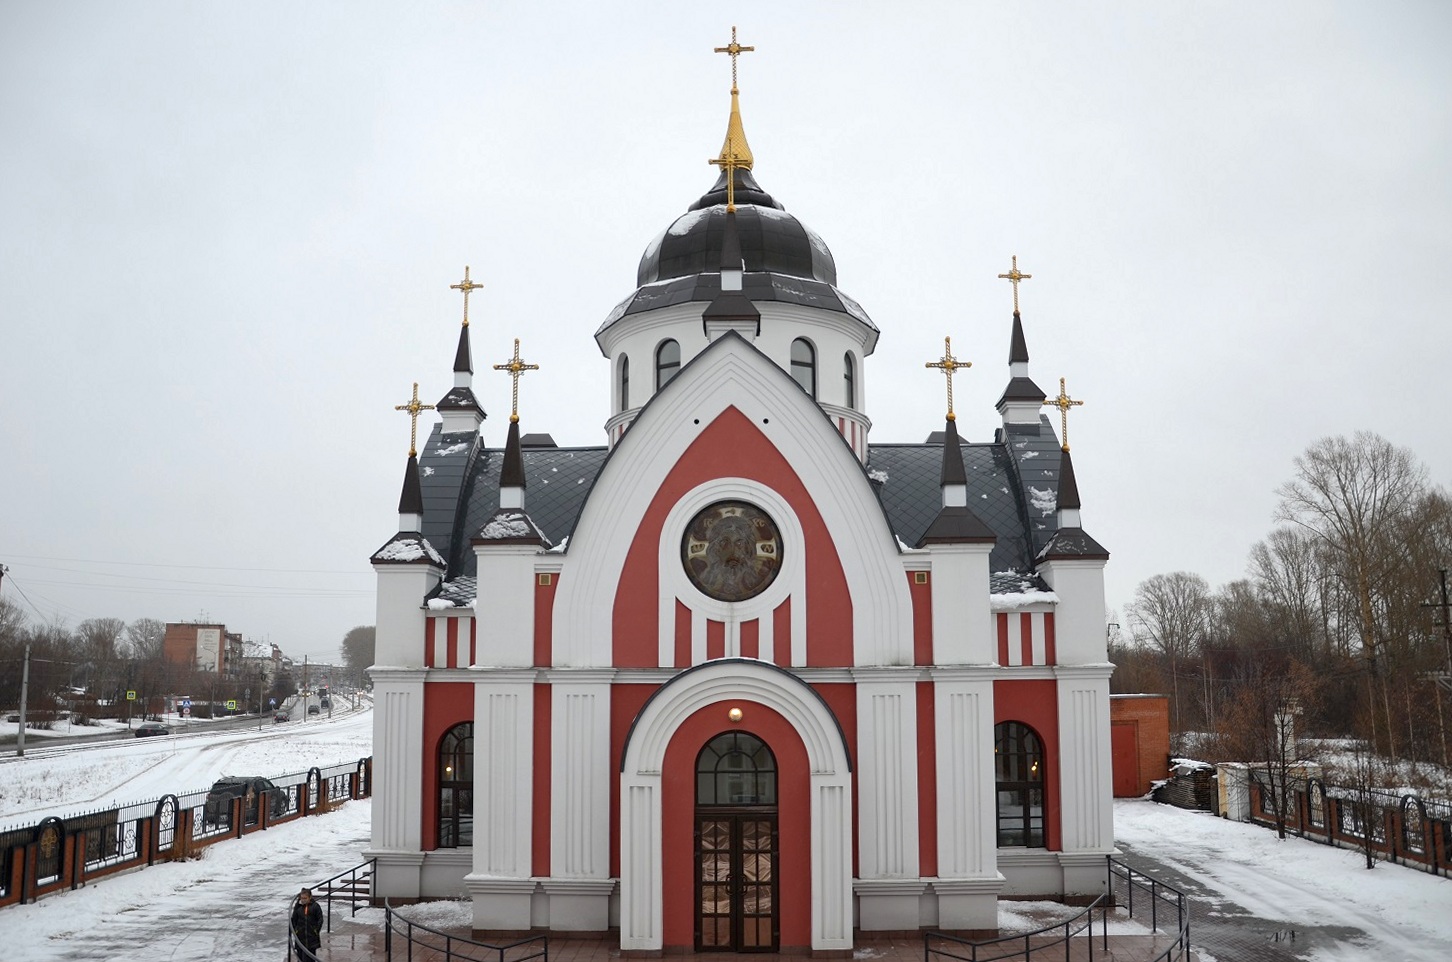 По поводу ЧП в Новокузнецке: ущерб храму полностью возмещён